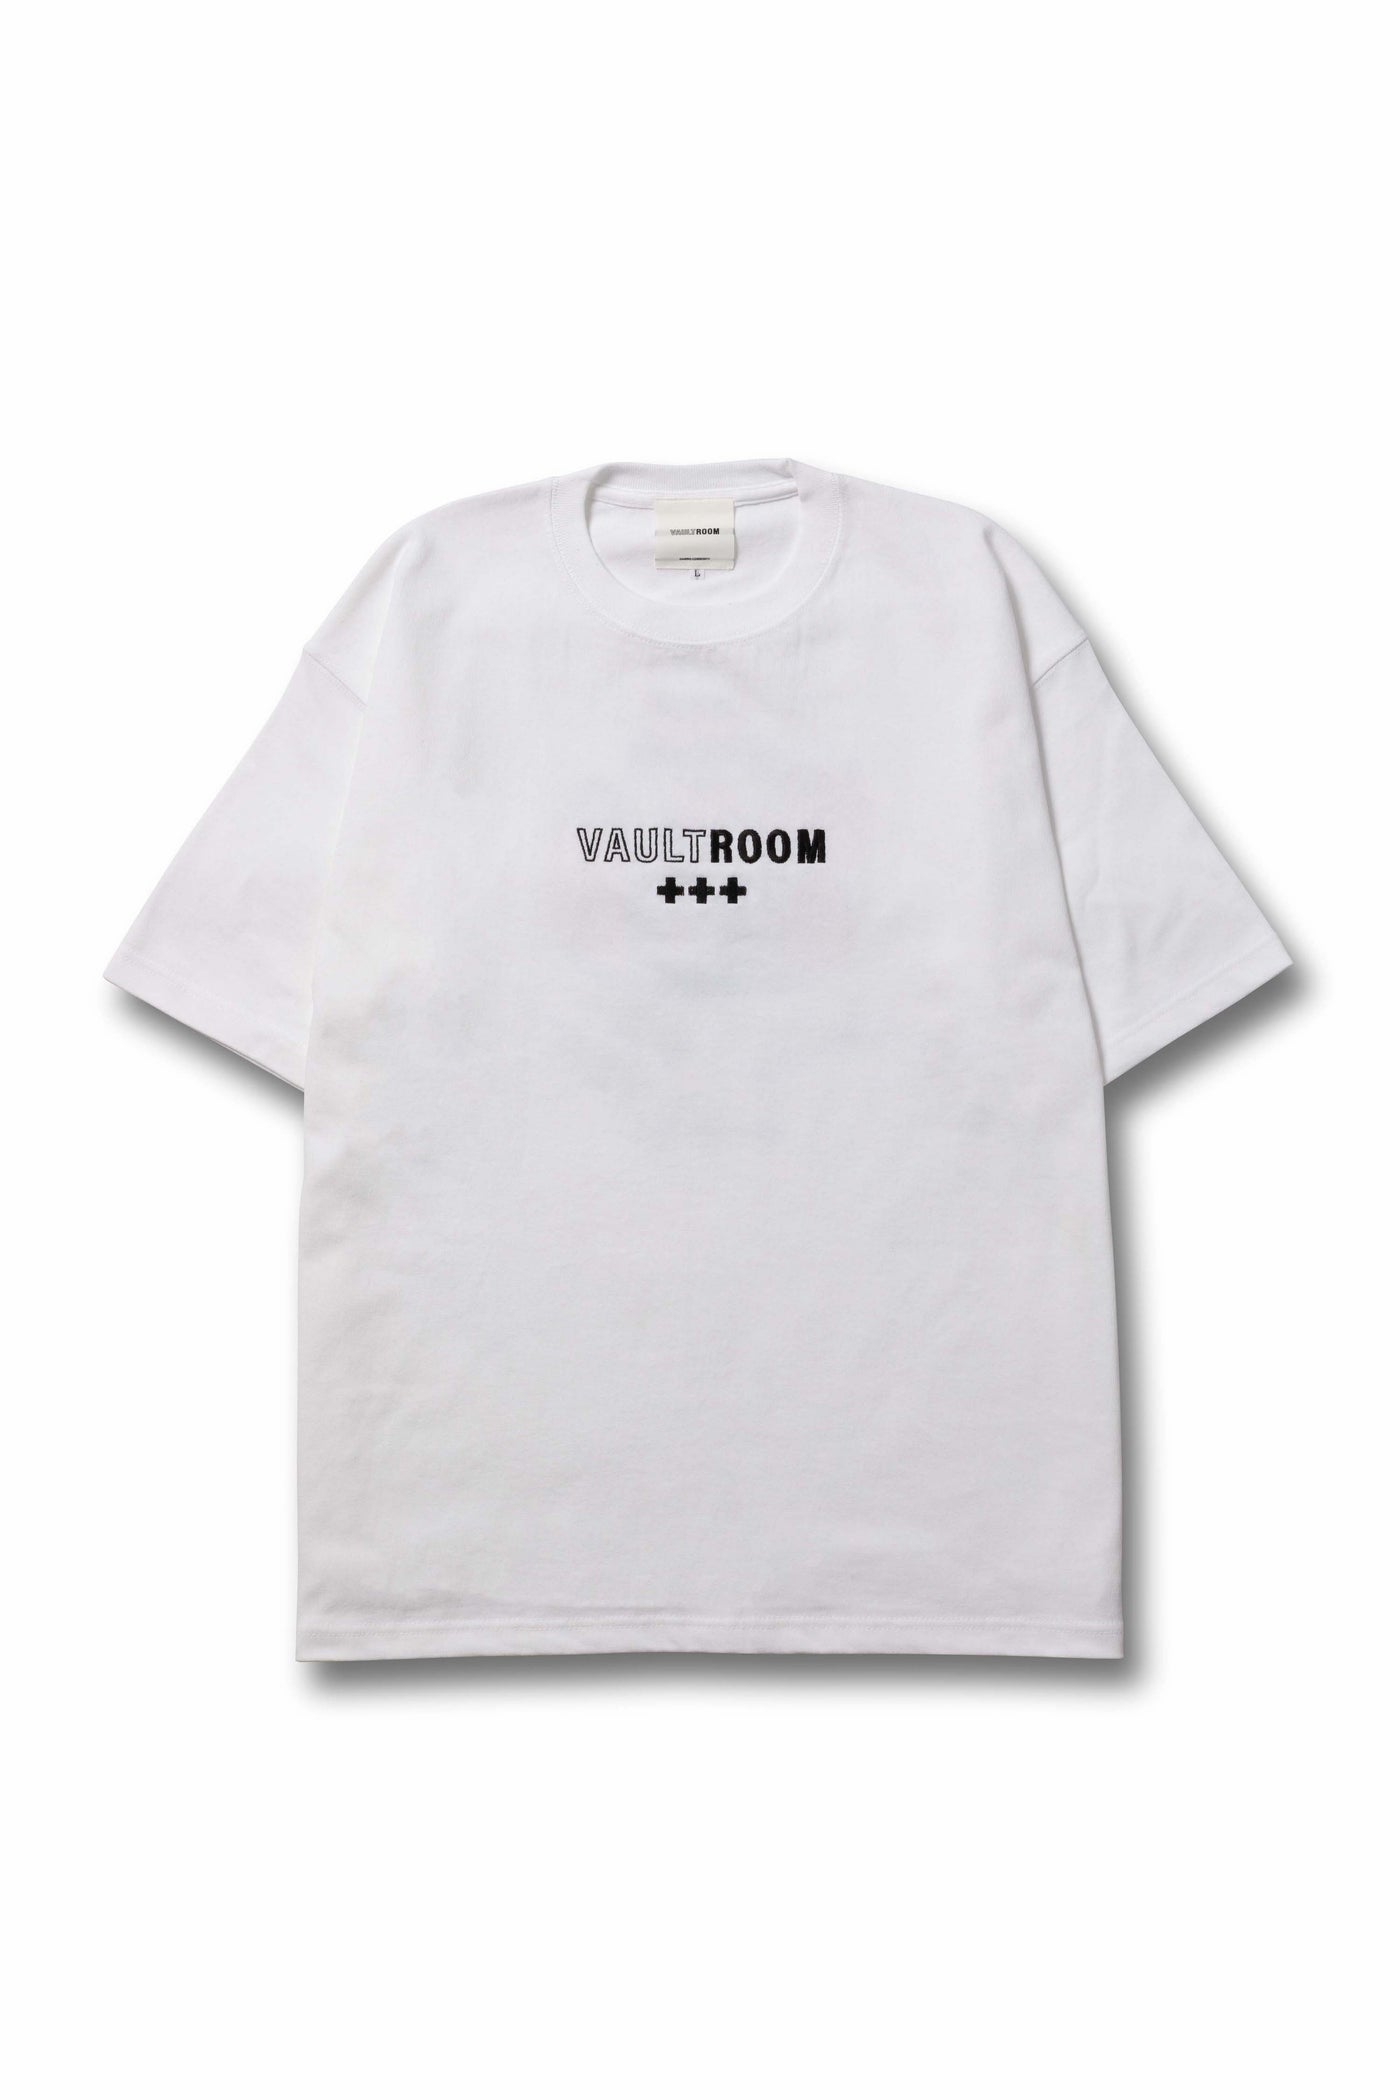 vaultroom】ボルトルーム×チーキー 白Tシャツ 【Mサイズ】 - トップス